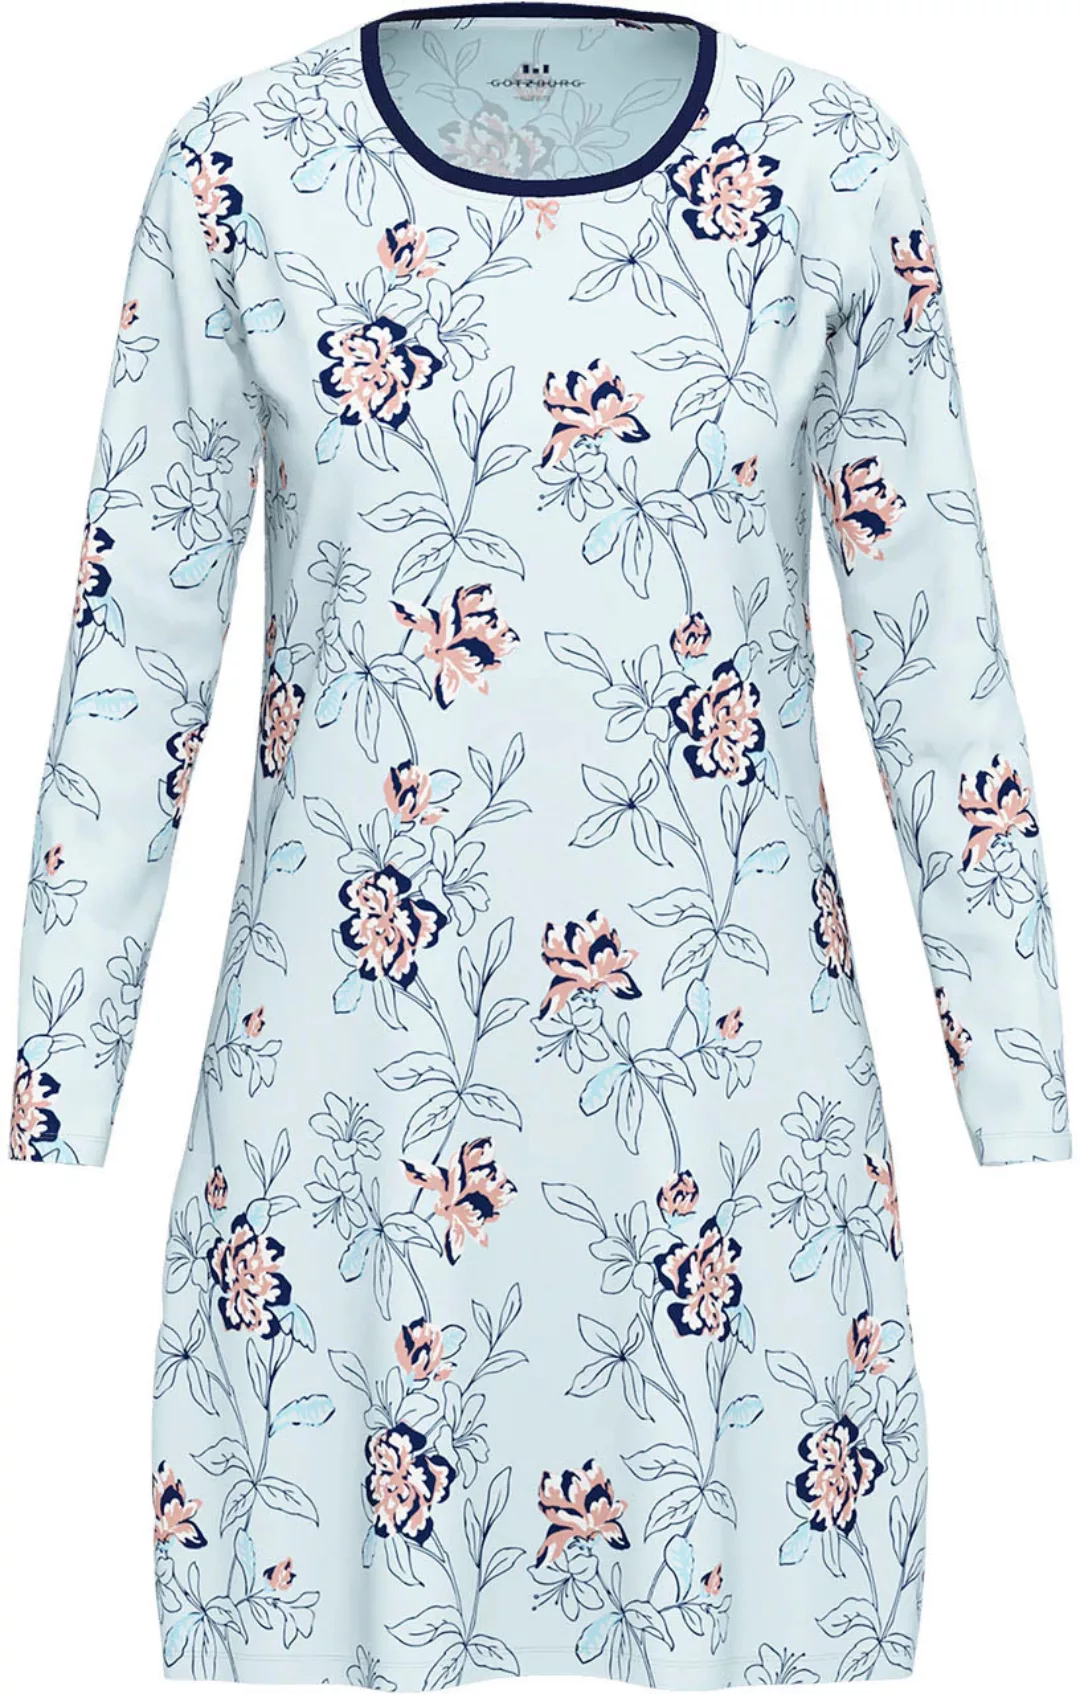 GÖTZBURG Nachthemd, mit floralem Print und langen Ärmeln für stylische Näch günstig online kaufen